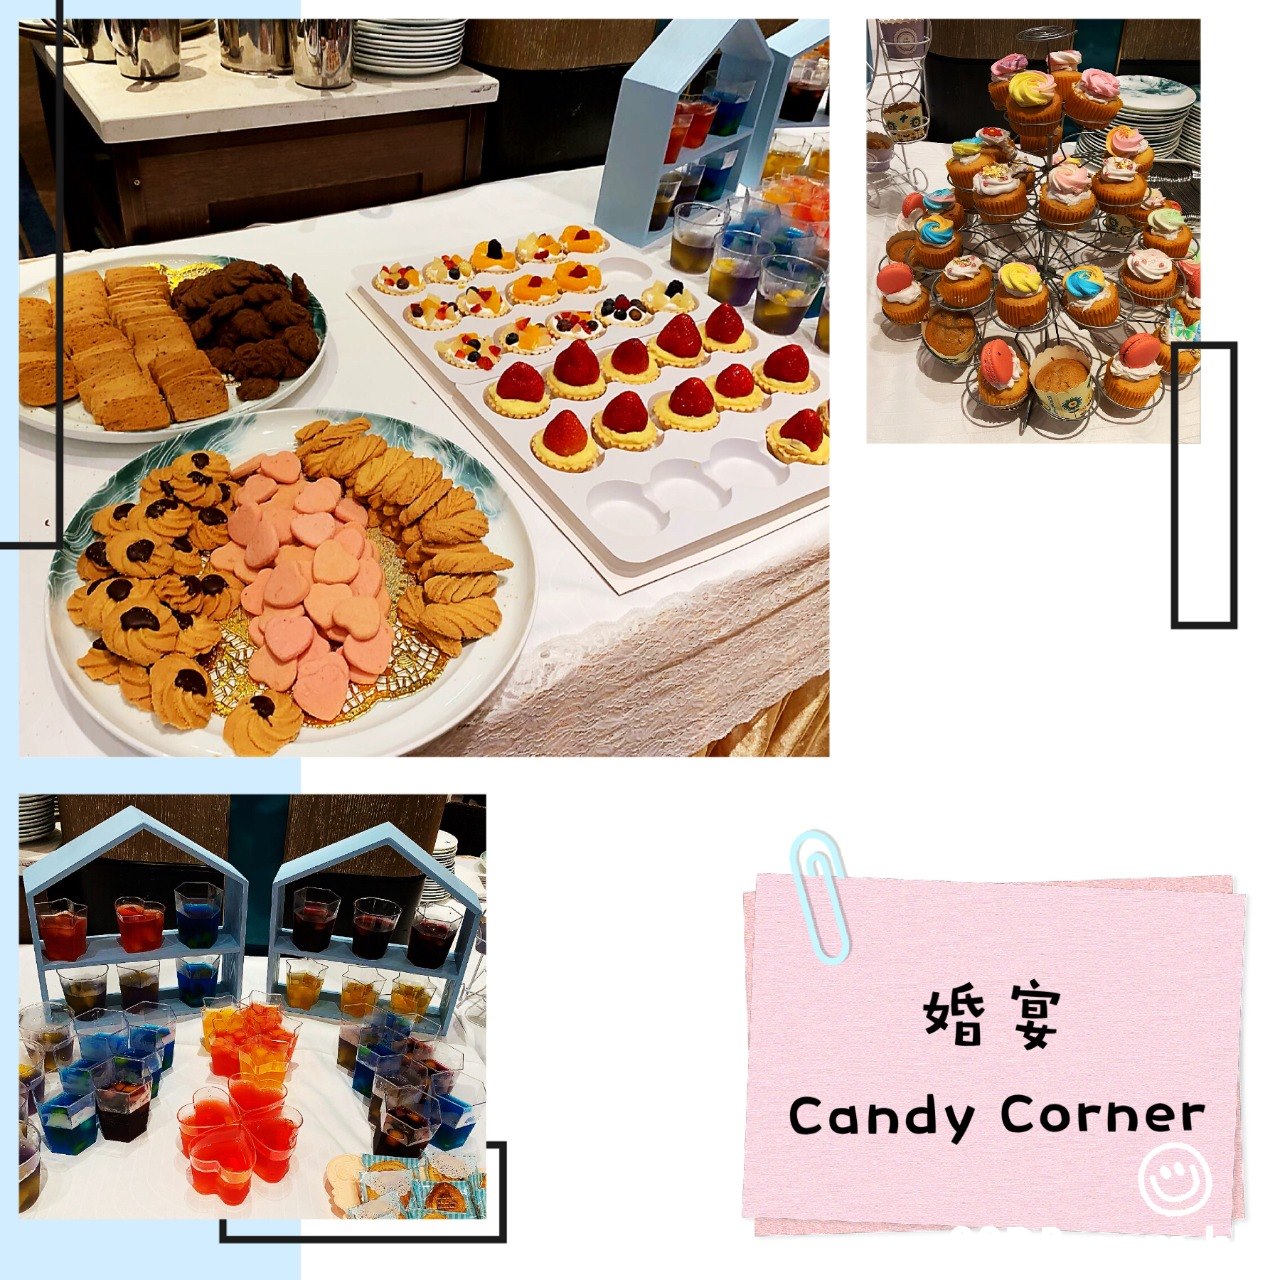 婚宴 Candy Corner  Food,Sweetness,Cuisine,Meal,Baking